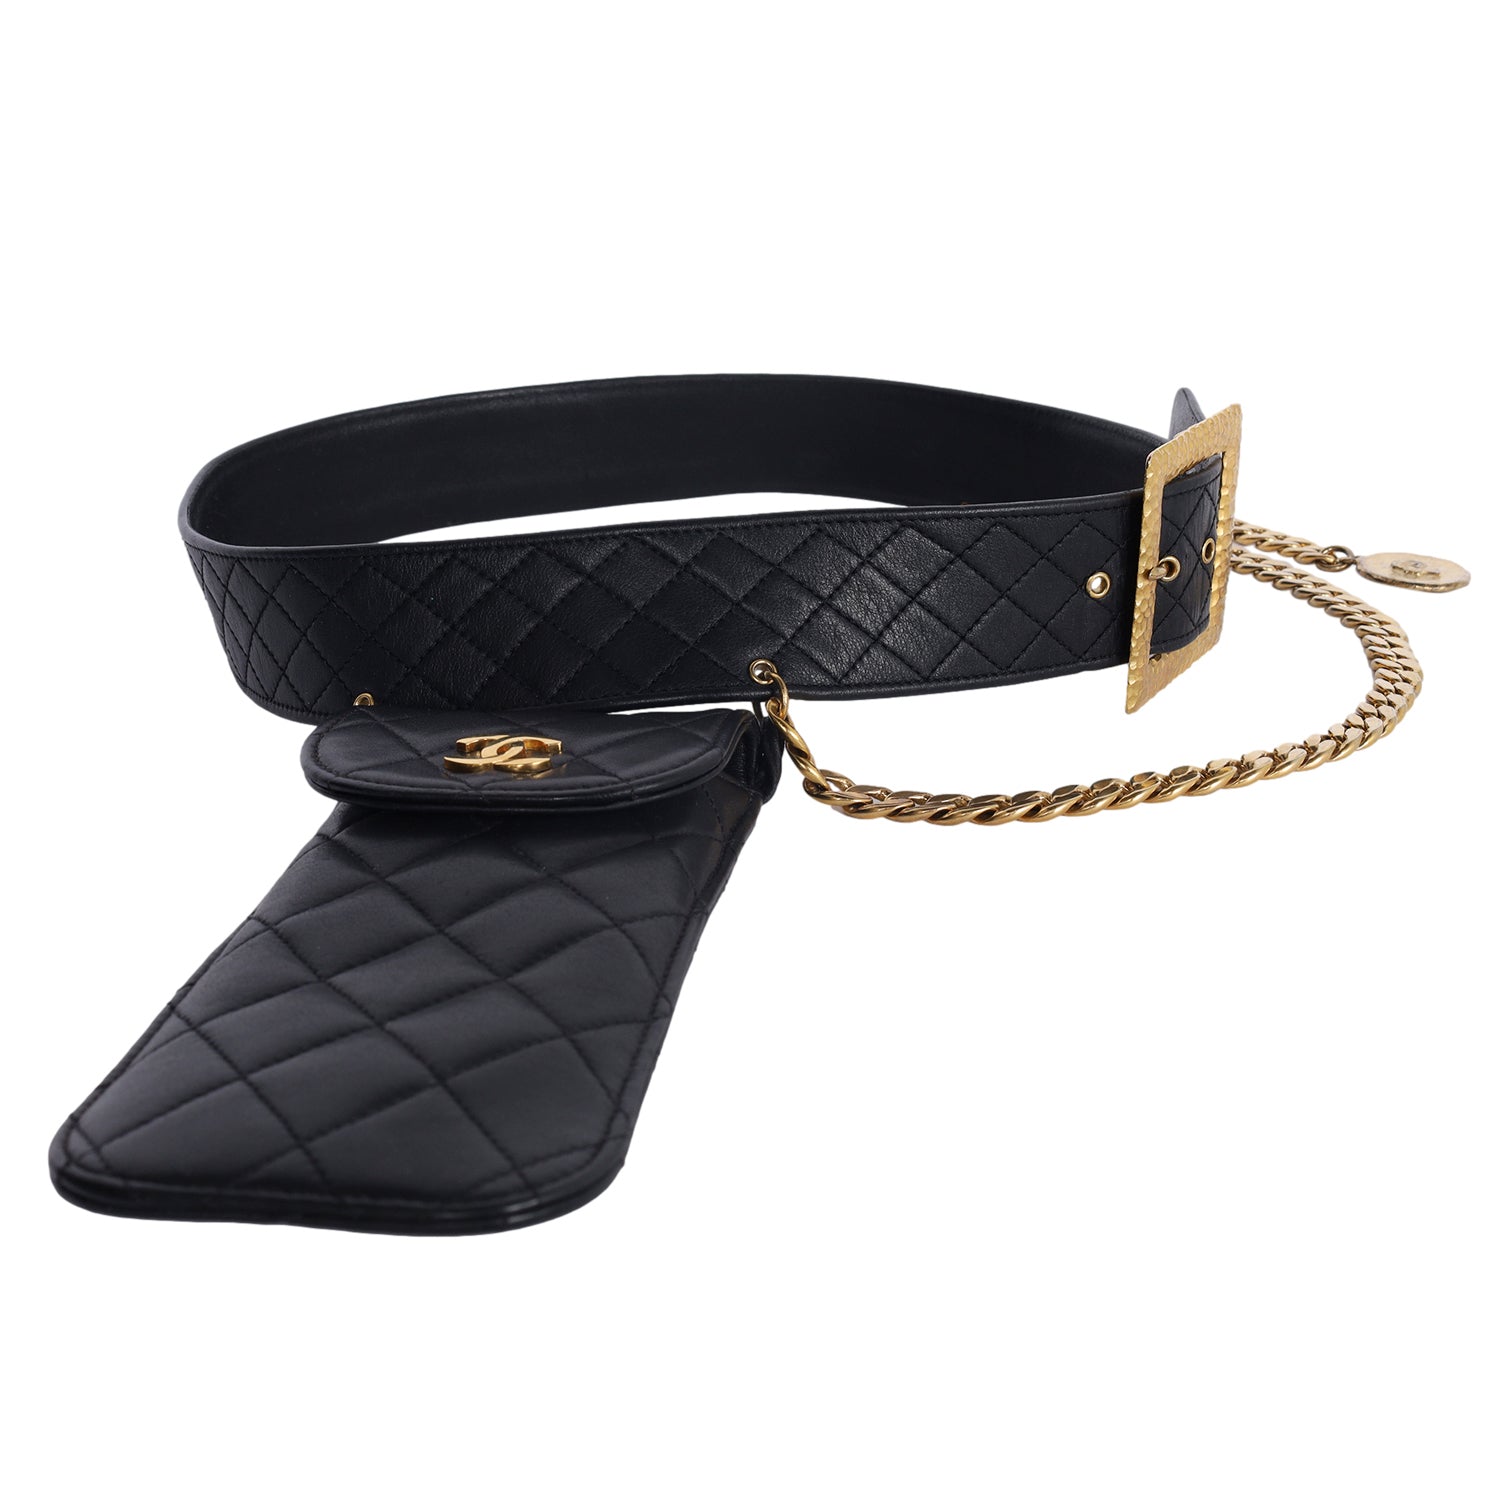 Chanel Belts for Women